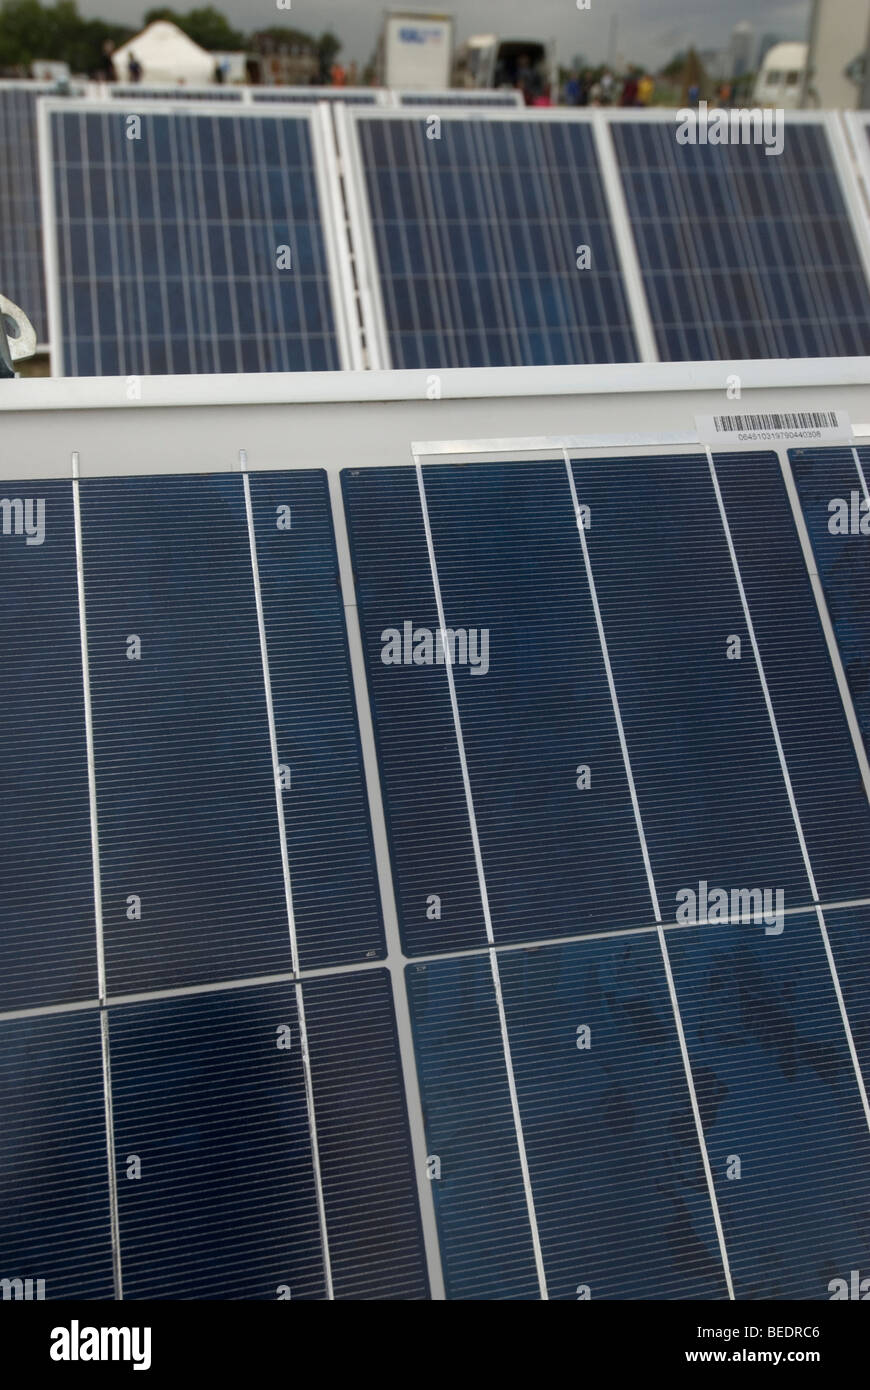 26 août 2009 Camp climatique arrive à Blackheath. Mettre en place des panneaux solaires pour fournir de l'électricité. Banque D'Images